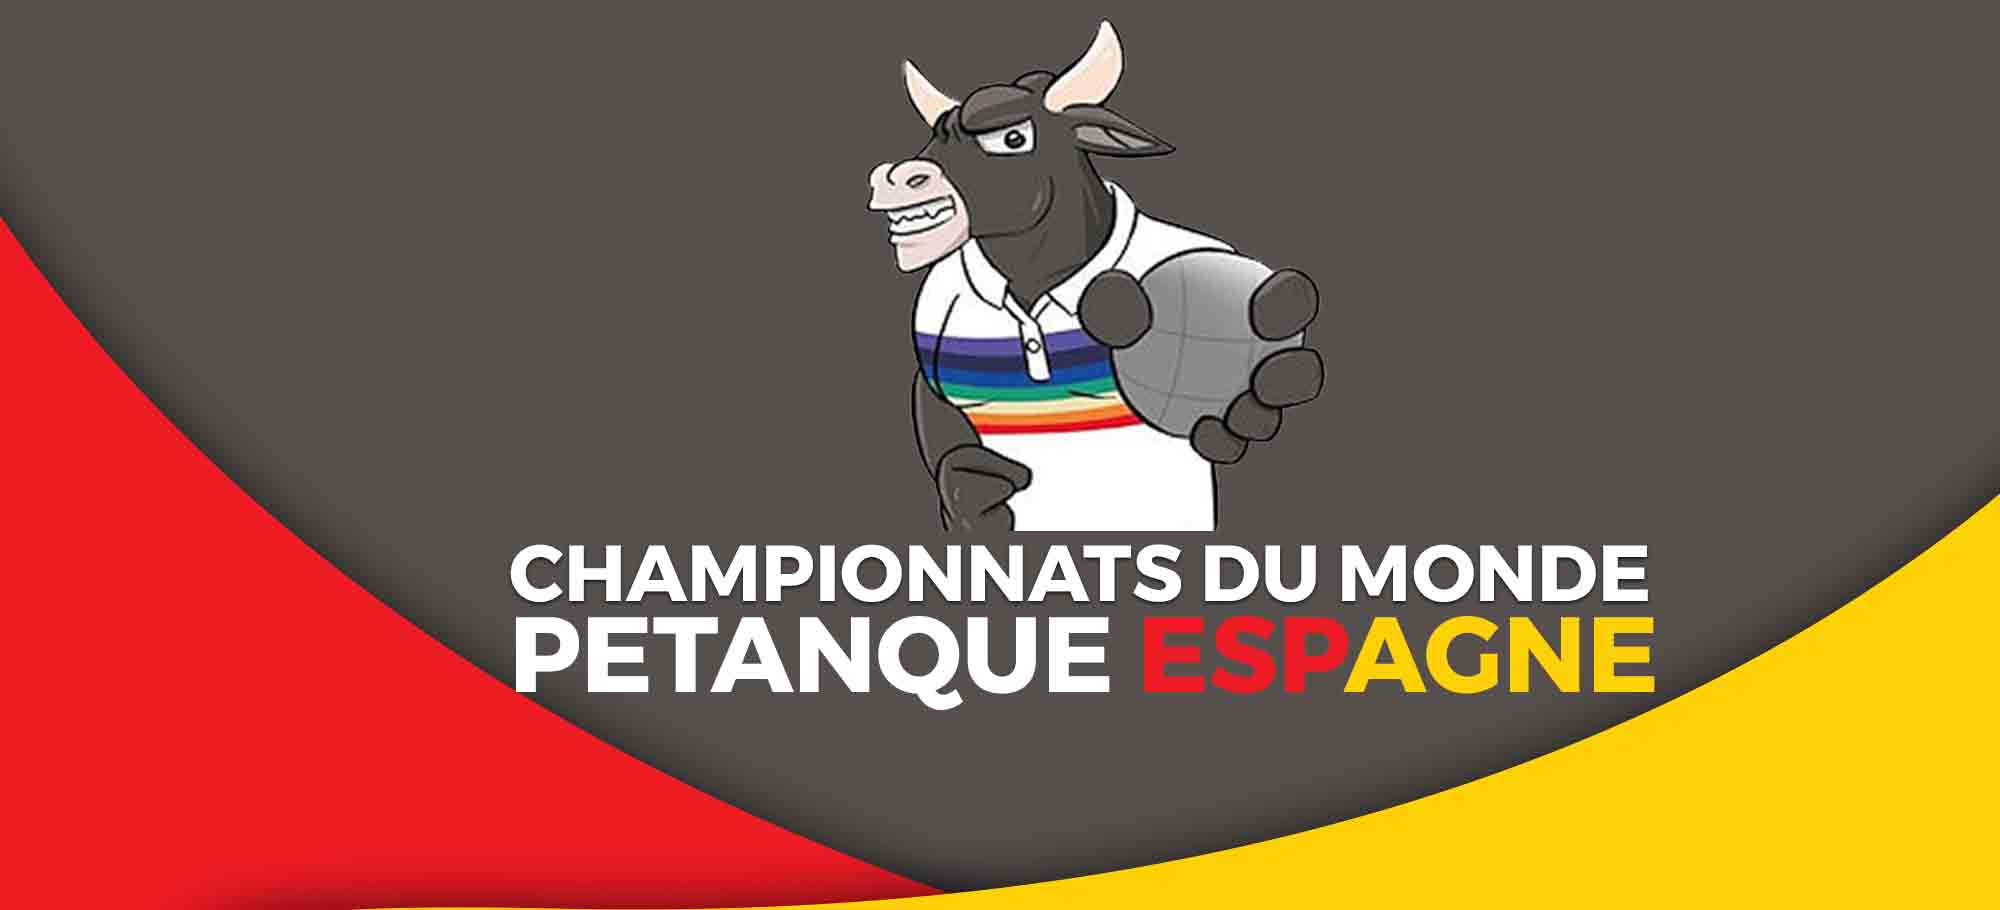 You are currently viewing Les Championnats du Monde de Pétanque en Espagne